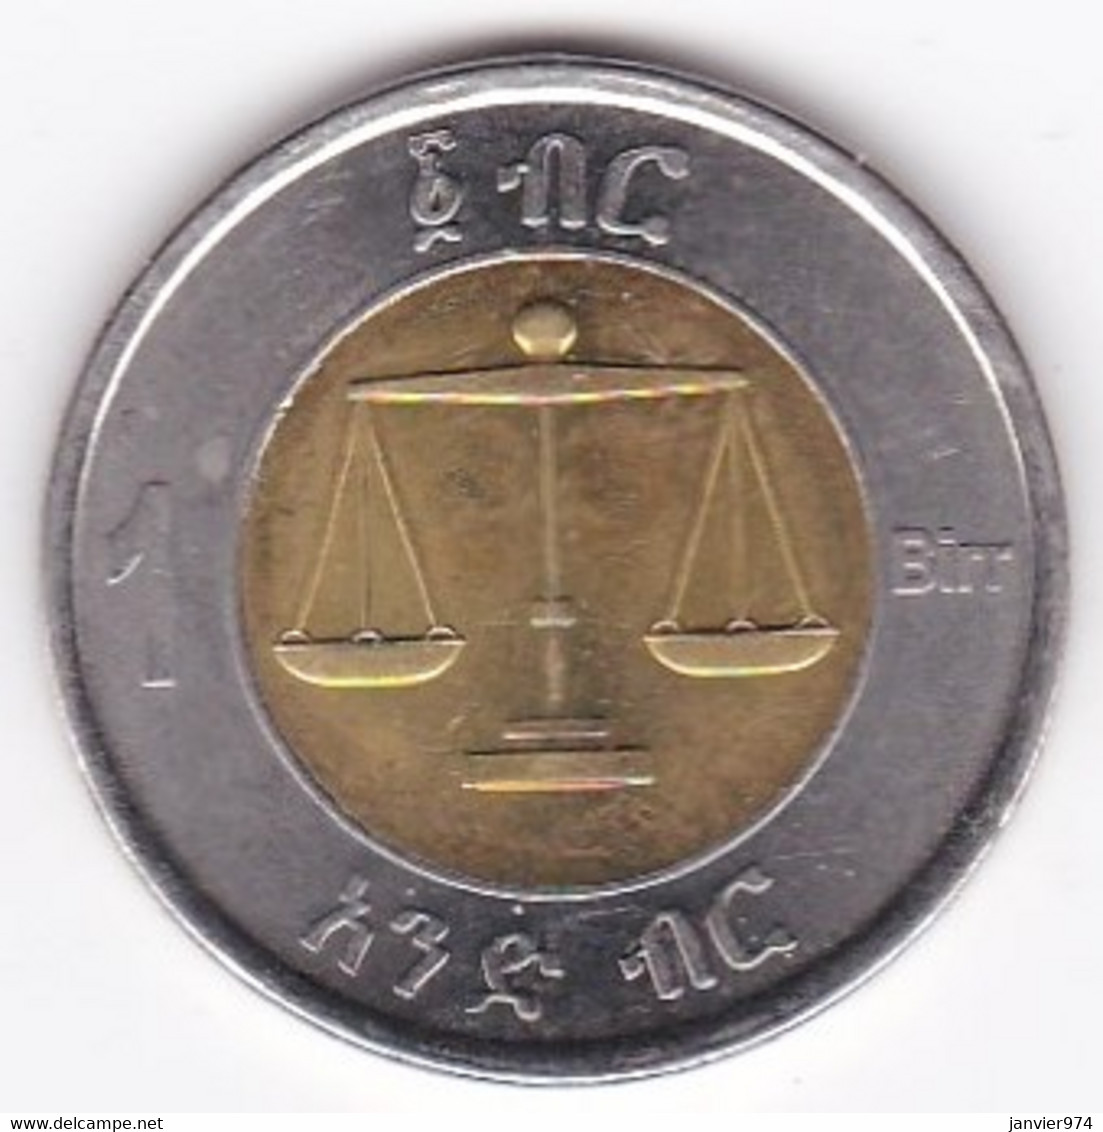 Ethiopie 1 Birr 2002 (2010), Bimétallique , KM # 78 - Etiopía